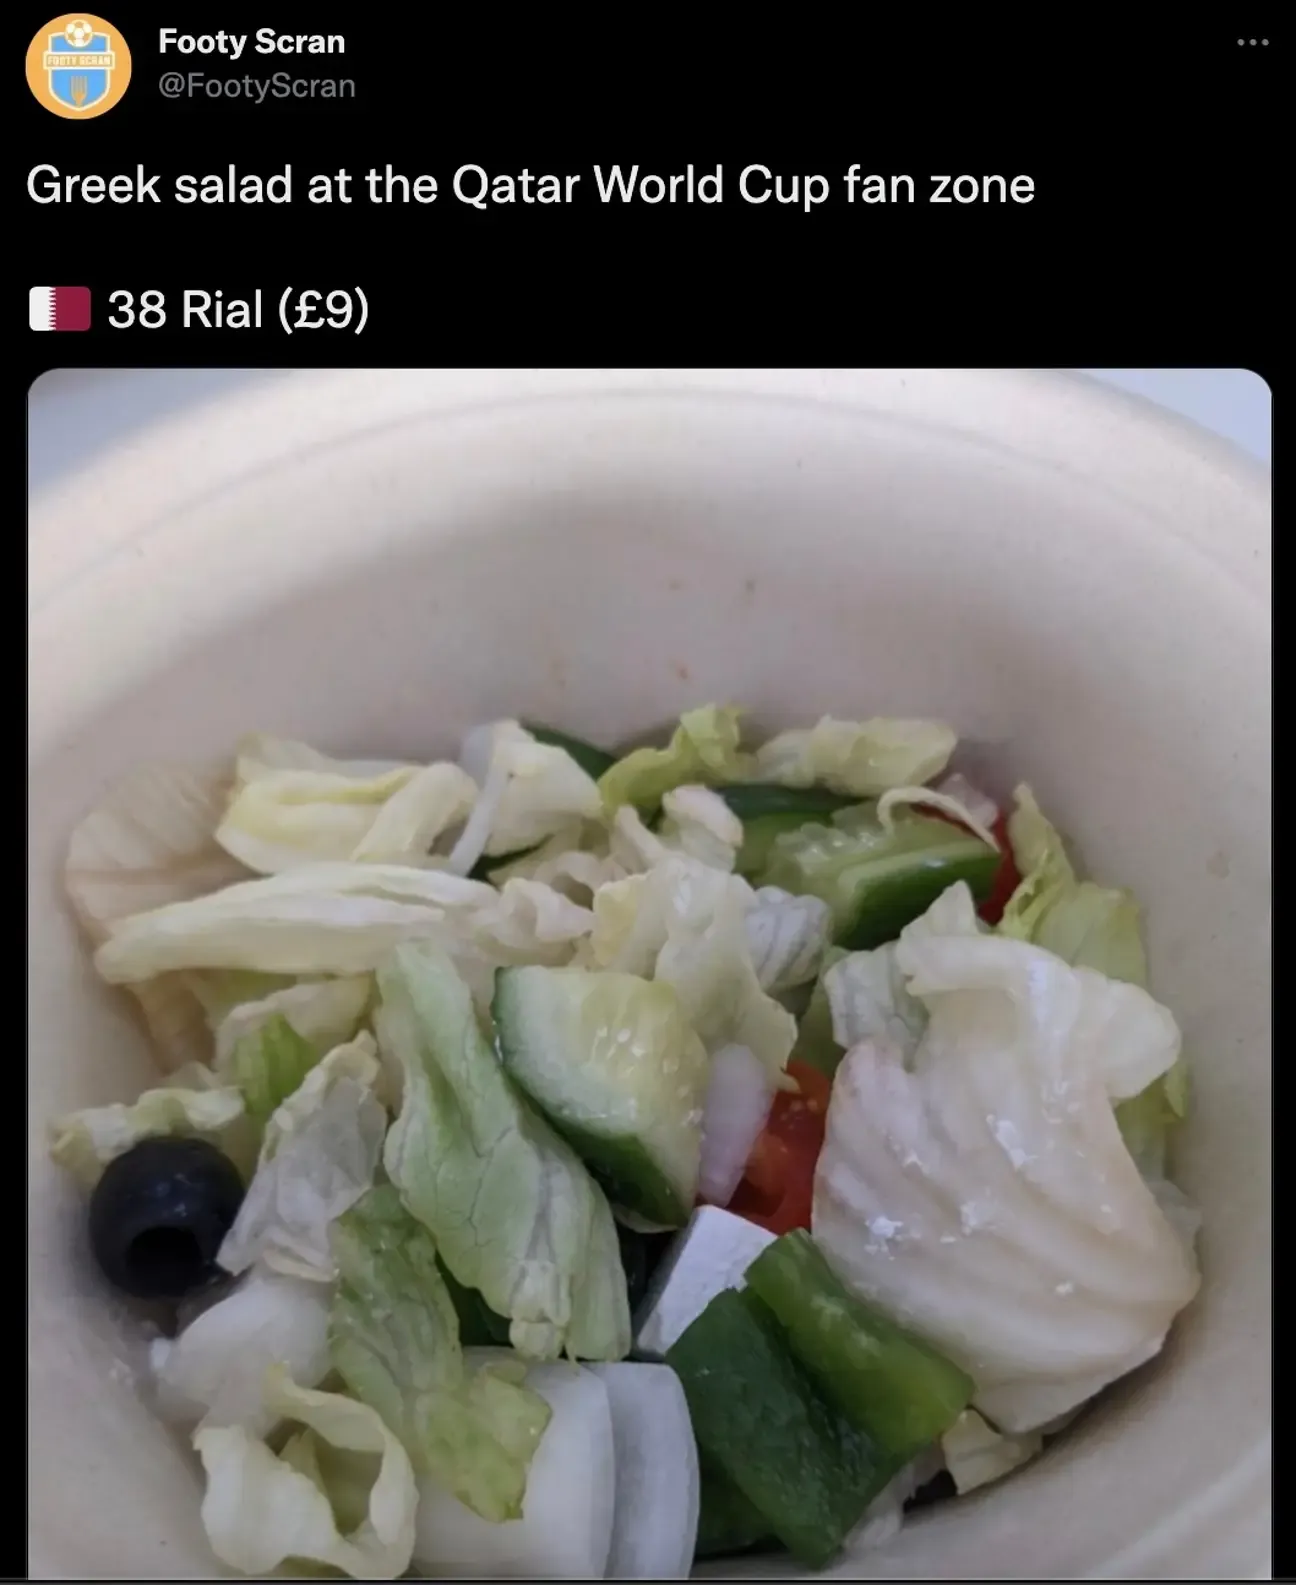 Piala Dunia 2022 Dimulai, Harga Makanan Mahal Jadi Sorotan